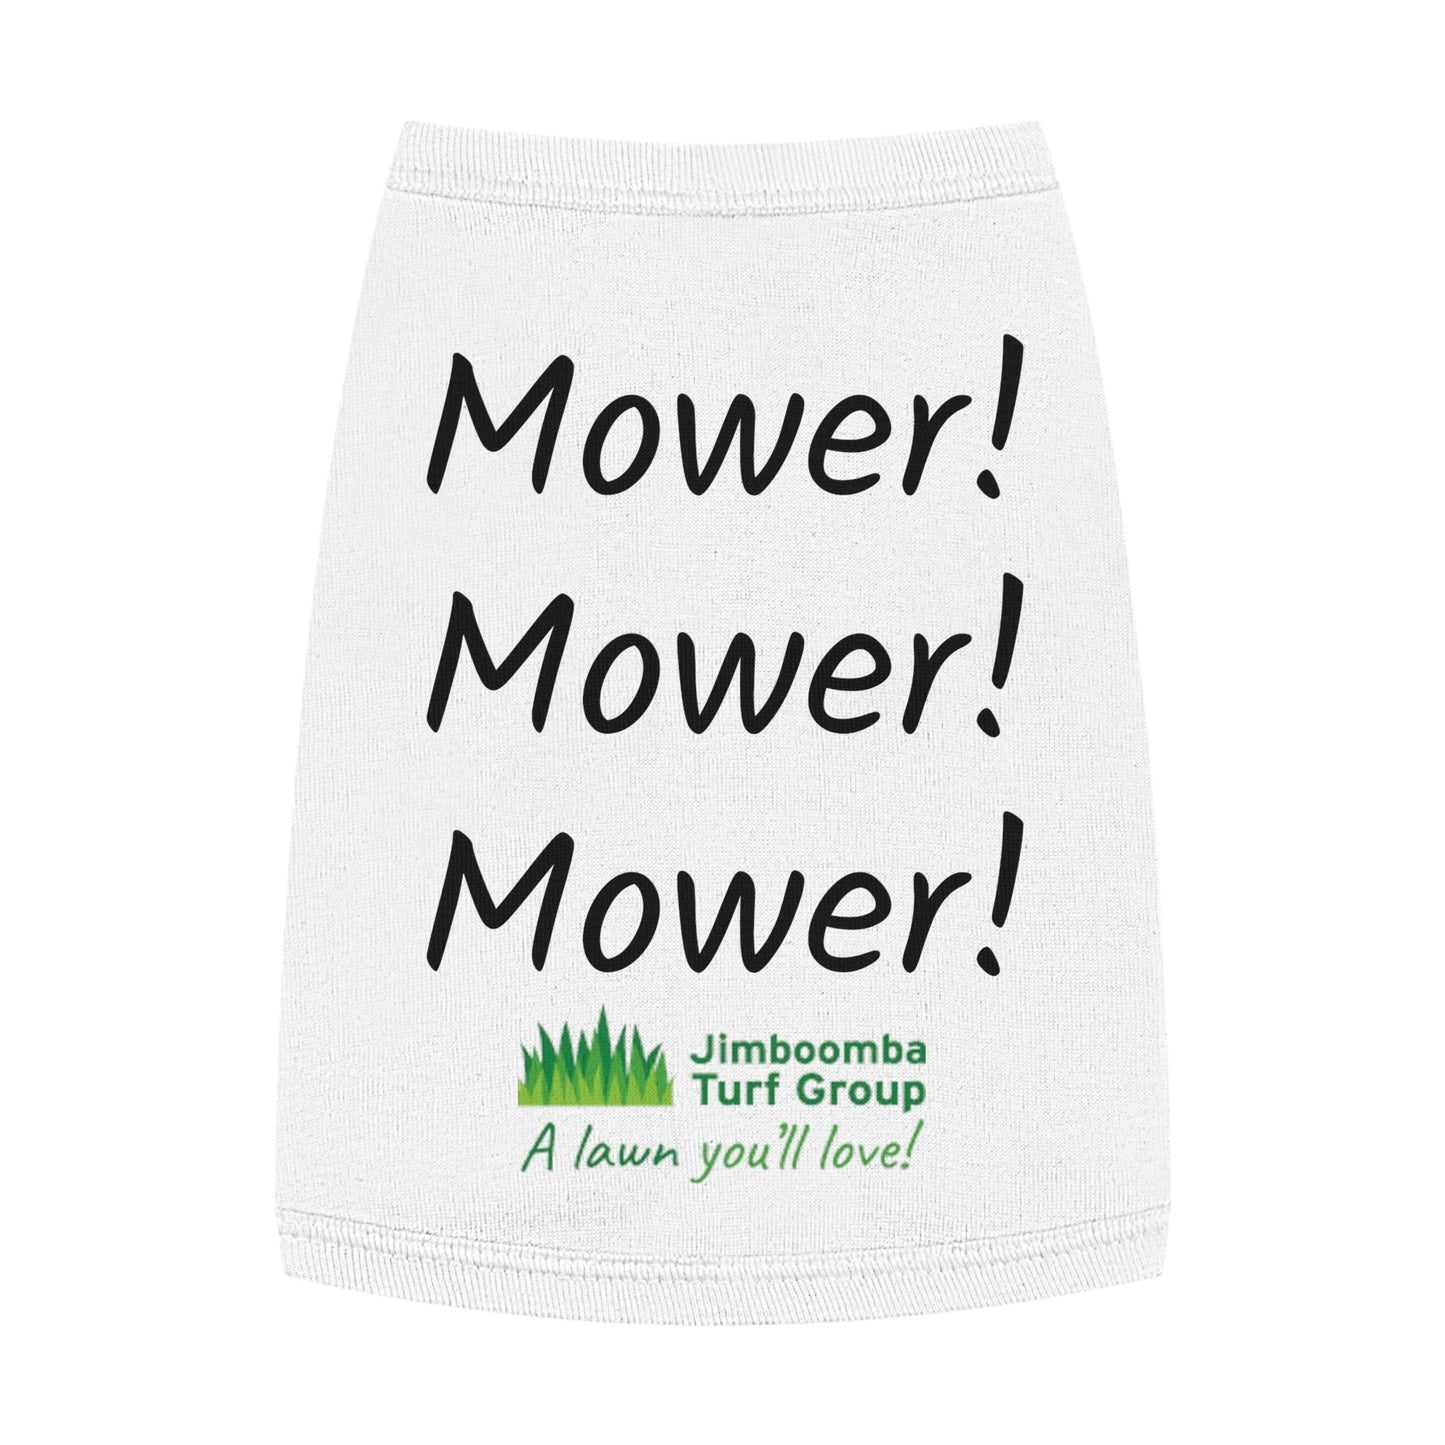 Pet Tank Top - Mower Mower Mower!